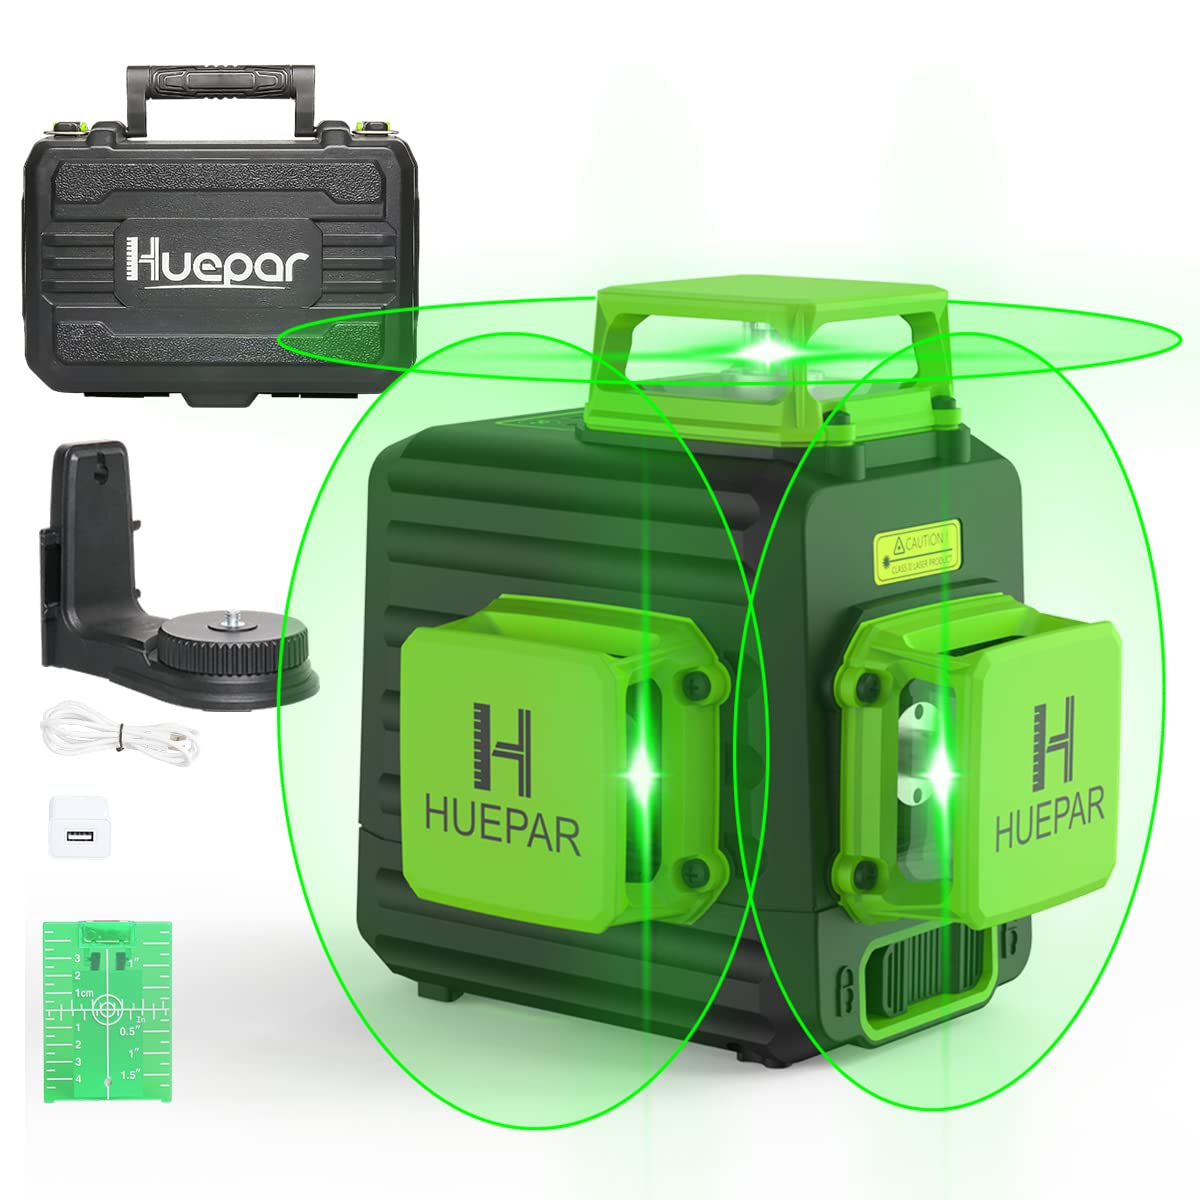 Huepar B03CG Pro - Poziomica laserowa samopoziomująca z 3 x 360° Green Beam Cross Line w twardej walizce